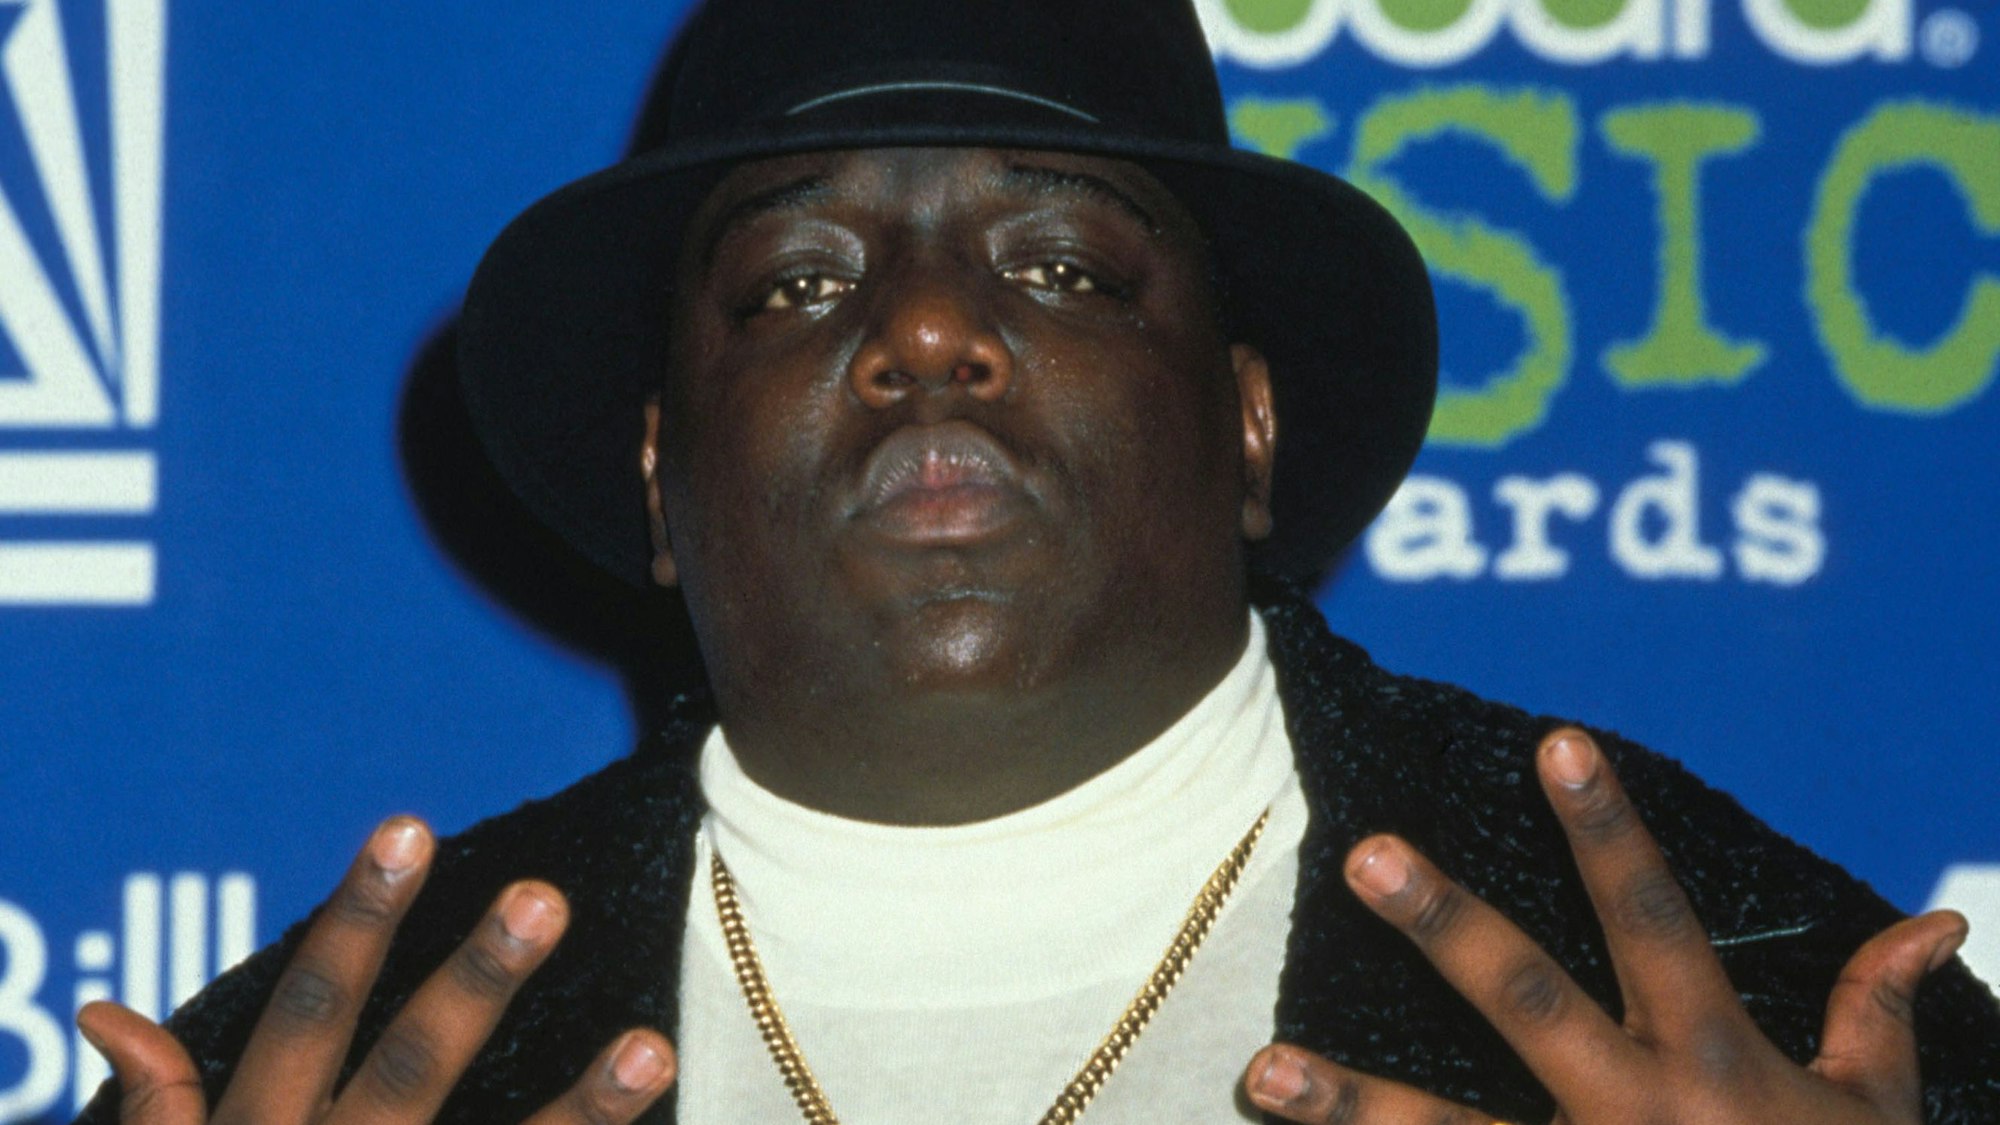 06.12.1995, USA, Las Vegas: Der Rapper Notorious B.I.G. alias Biggie Smalls kommt zur Verleihung der Billboard Awards, wo er zum Rapper des Jahres prämiert worden ist. 1997 wurde Notorious ermordet.